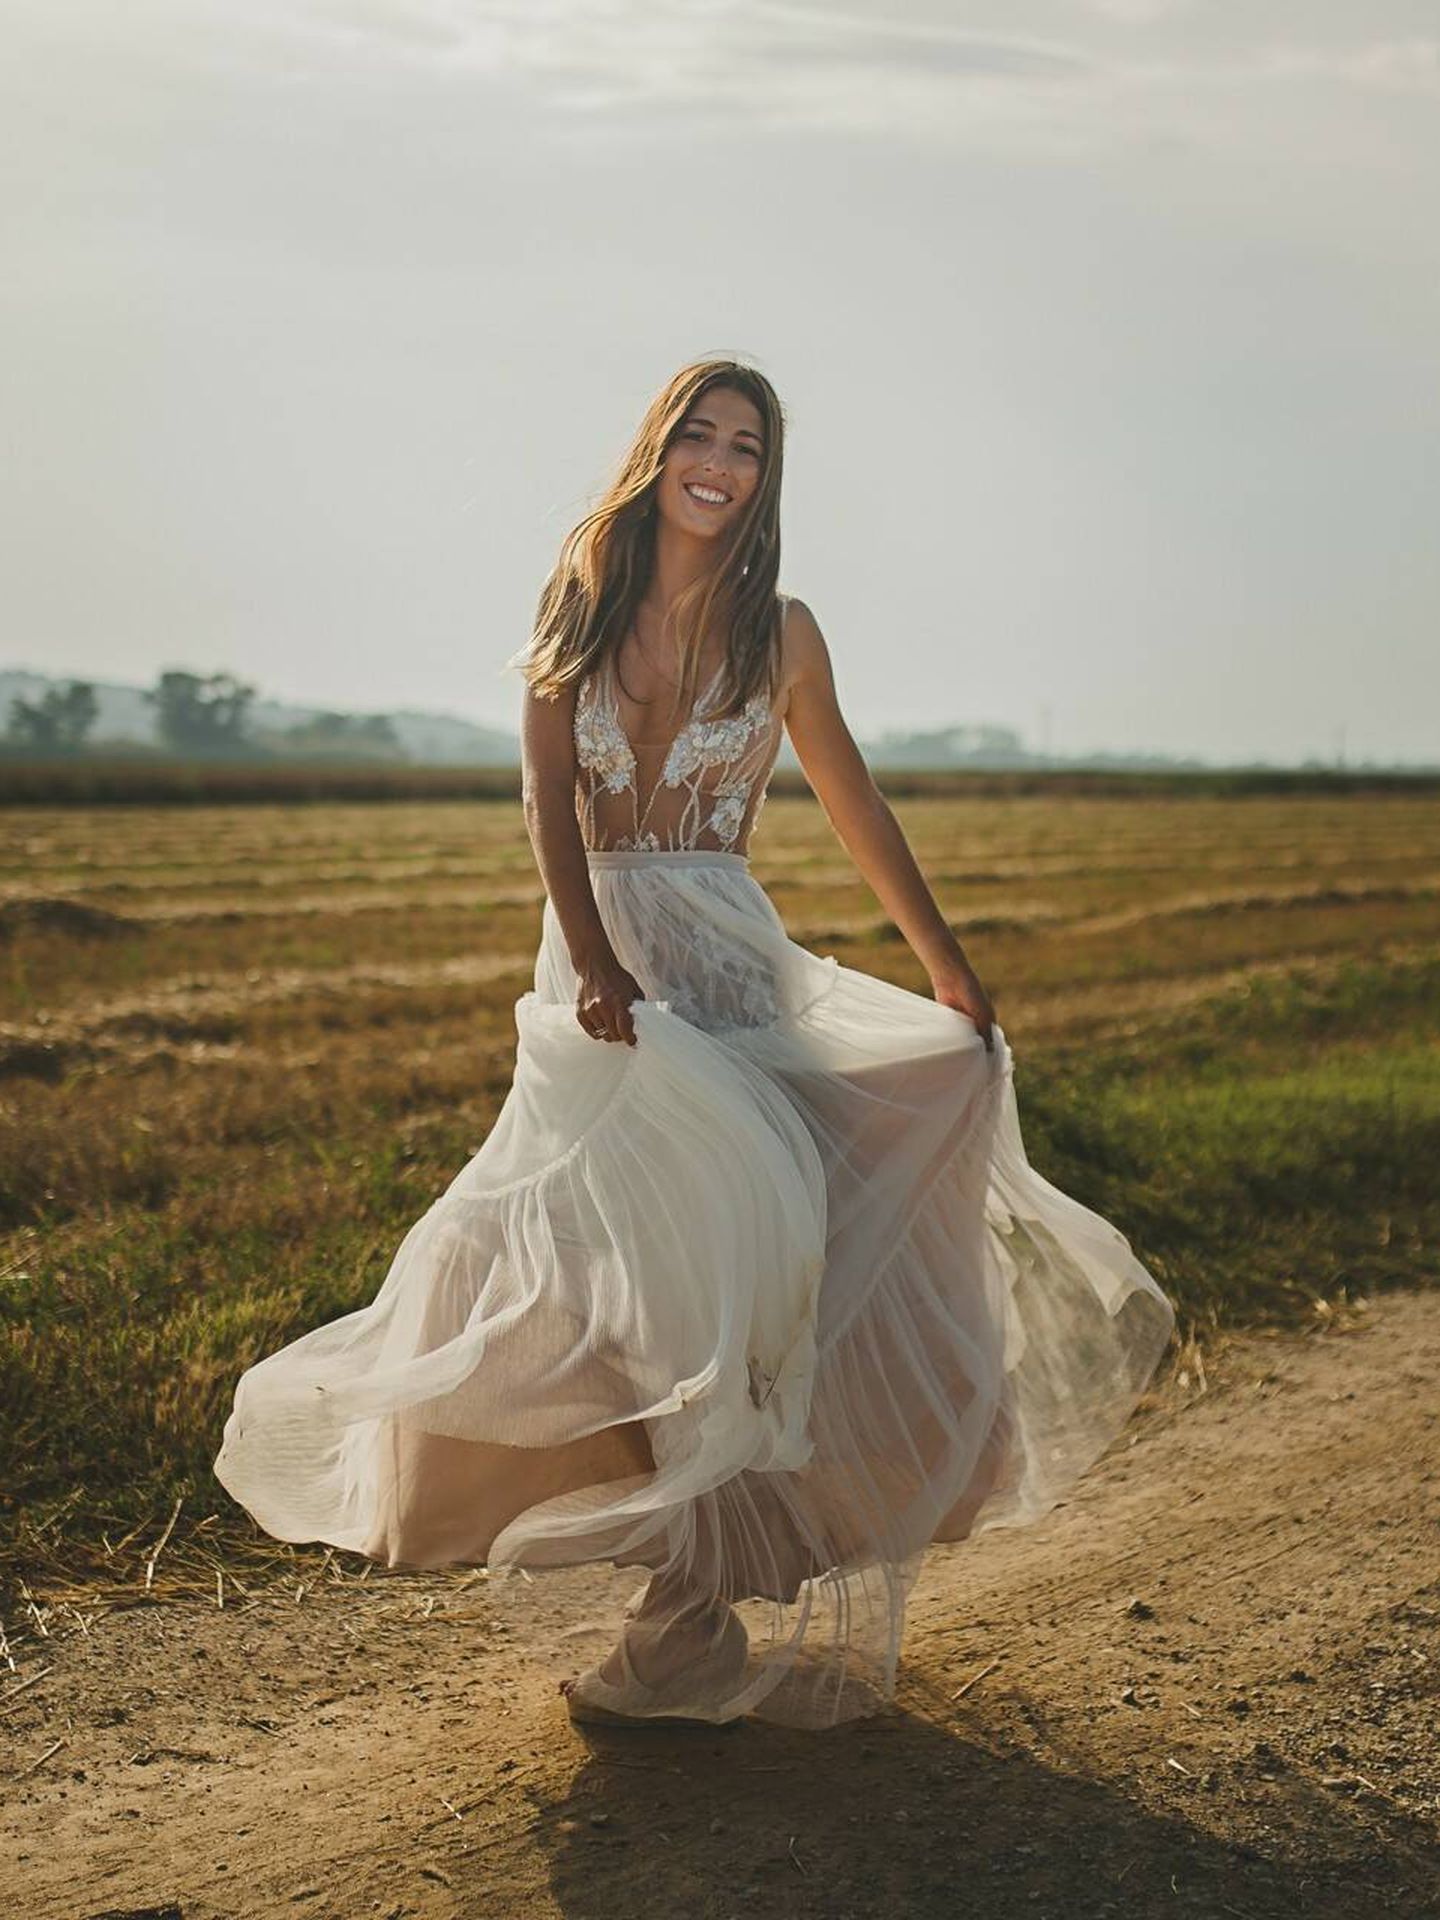 Vestido de novia ligero, sencillo y con cierto aire boho. (Fotografía de La Libélula Weddings vía Bodas.net)